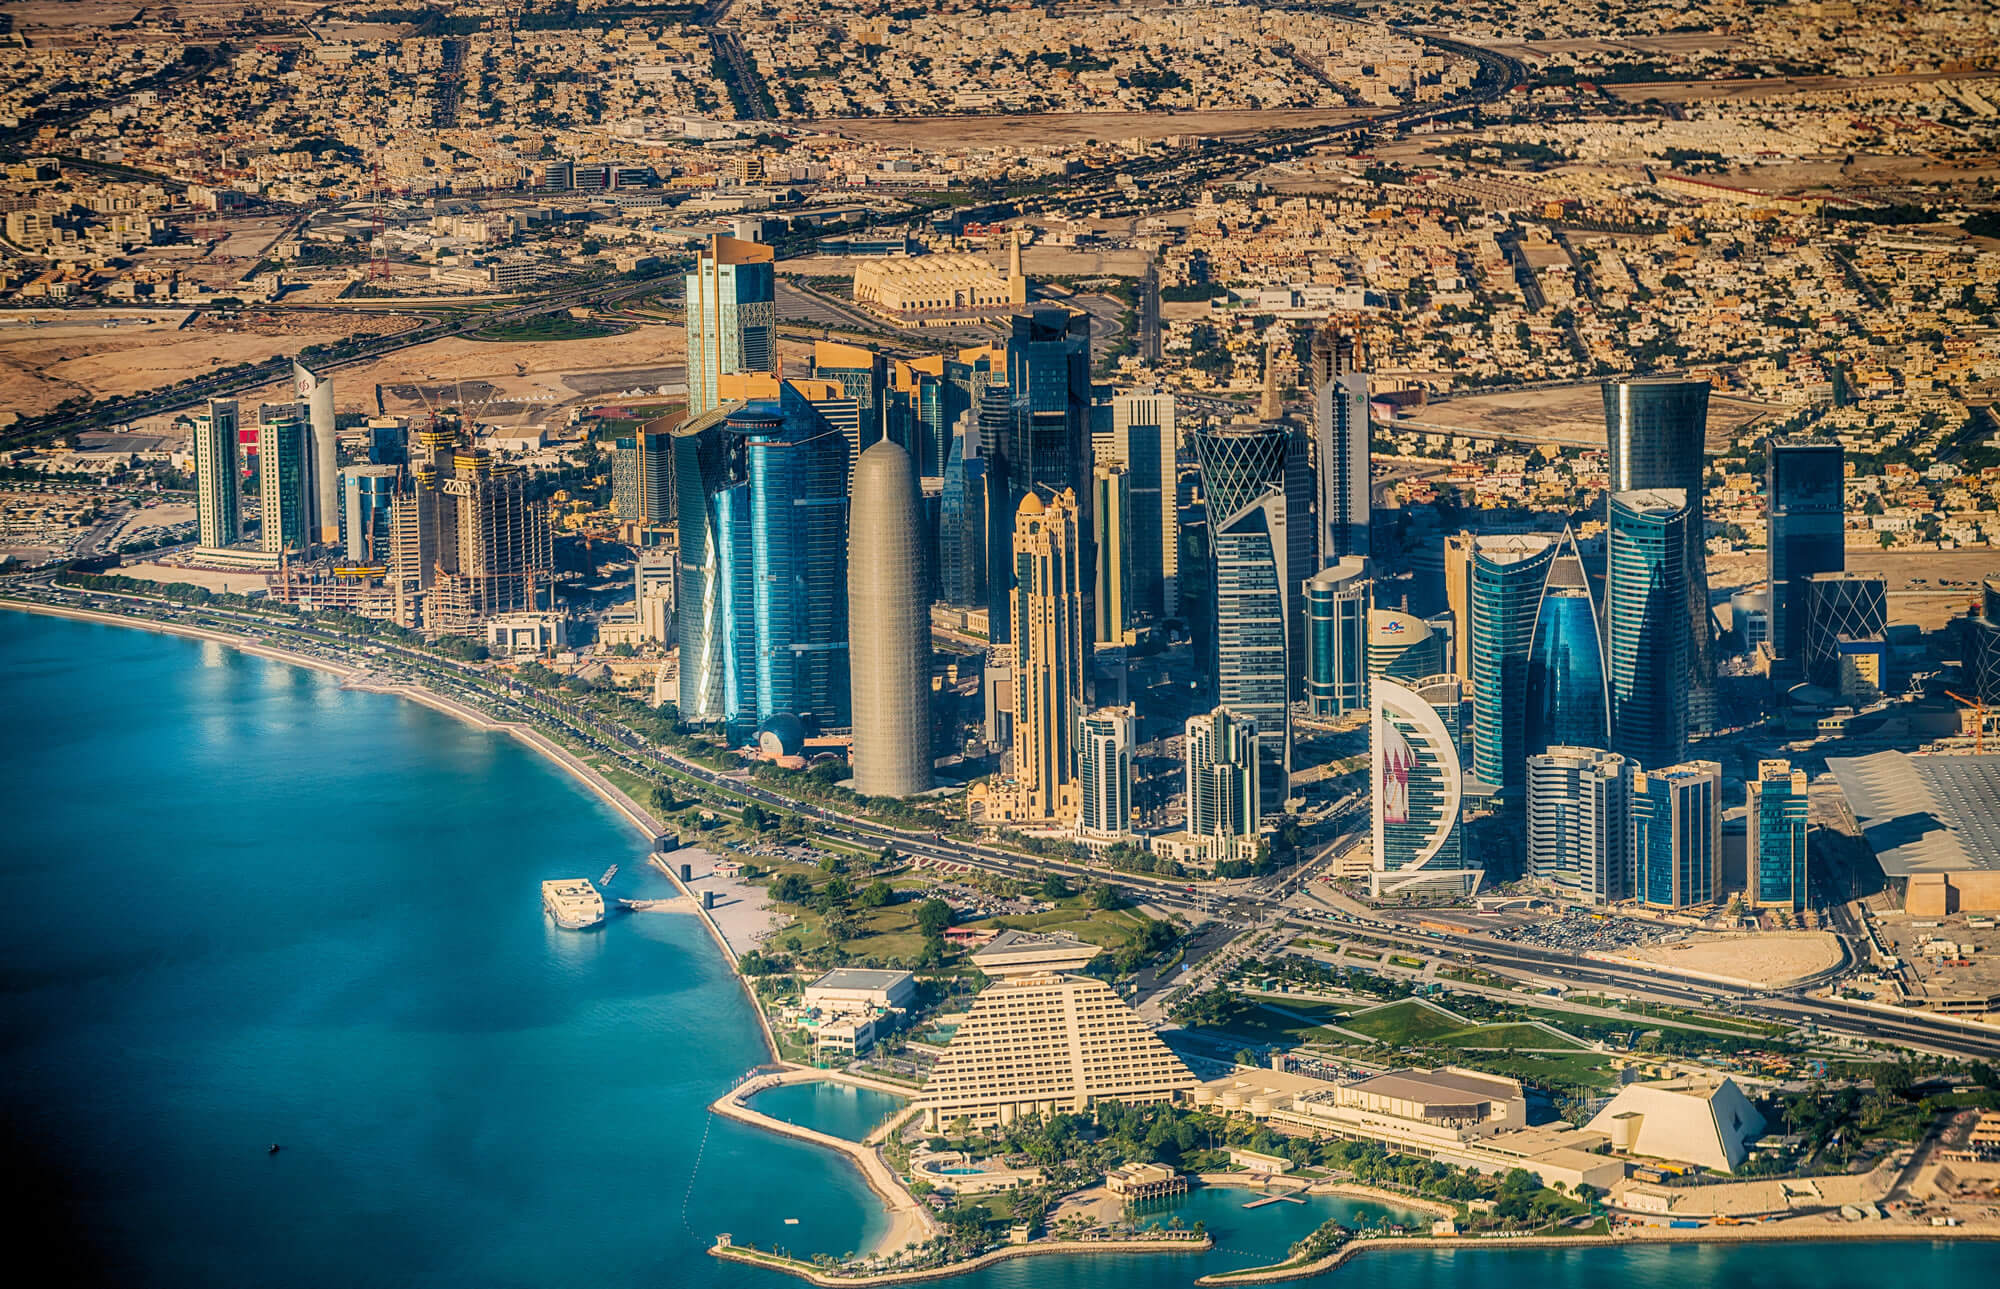 Aerial view of Doha, Qatar